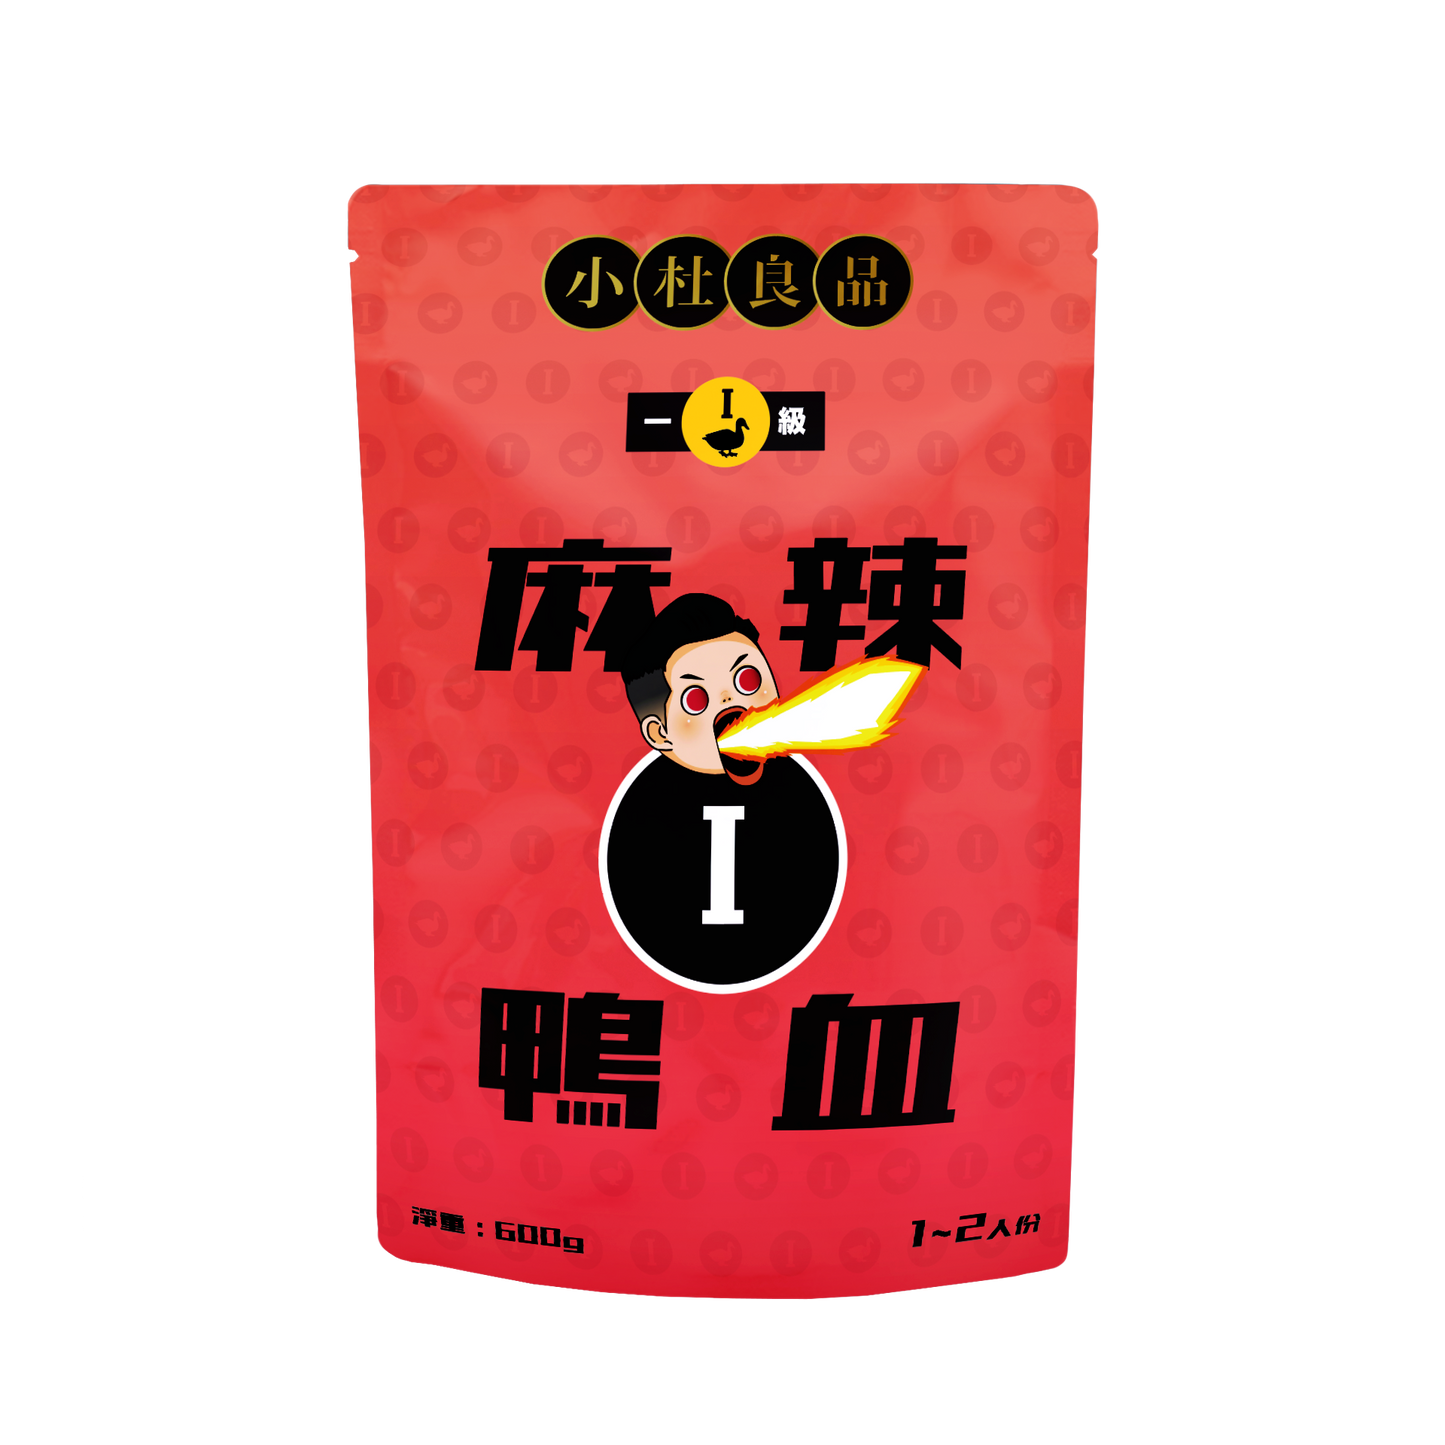 小杜良品 - 花椒之味拌麵/一級麻辣鴨血/三級麻辣鴨血 套裝 Fragrance Stir Noodles (115g*4pack) / Spicy Duck Blood (Level 1) / Spicy Duck Blood (Level 3) Package